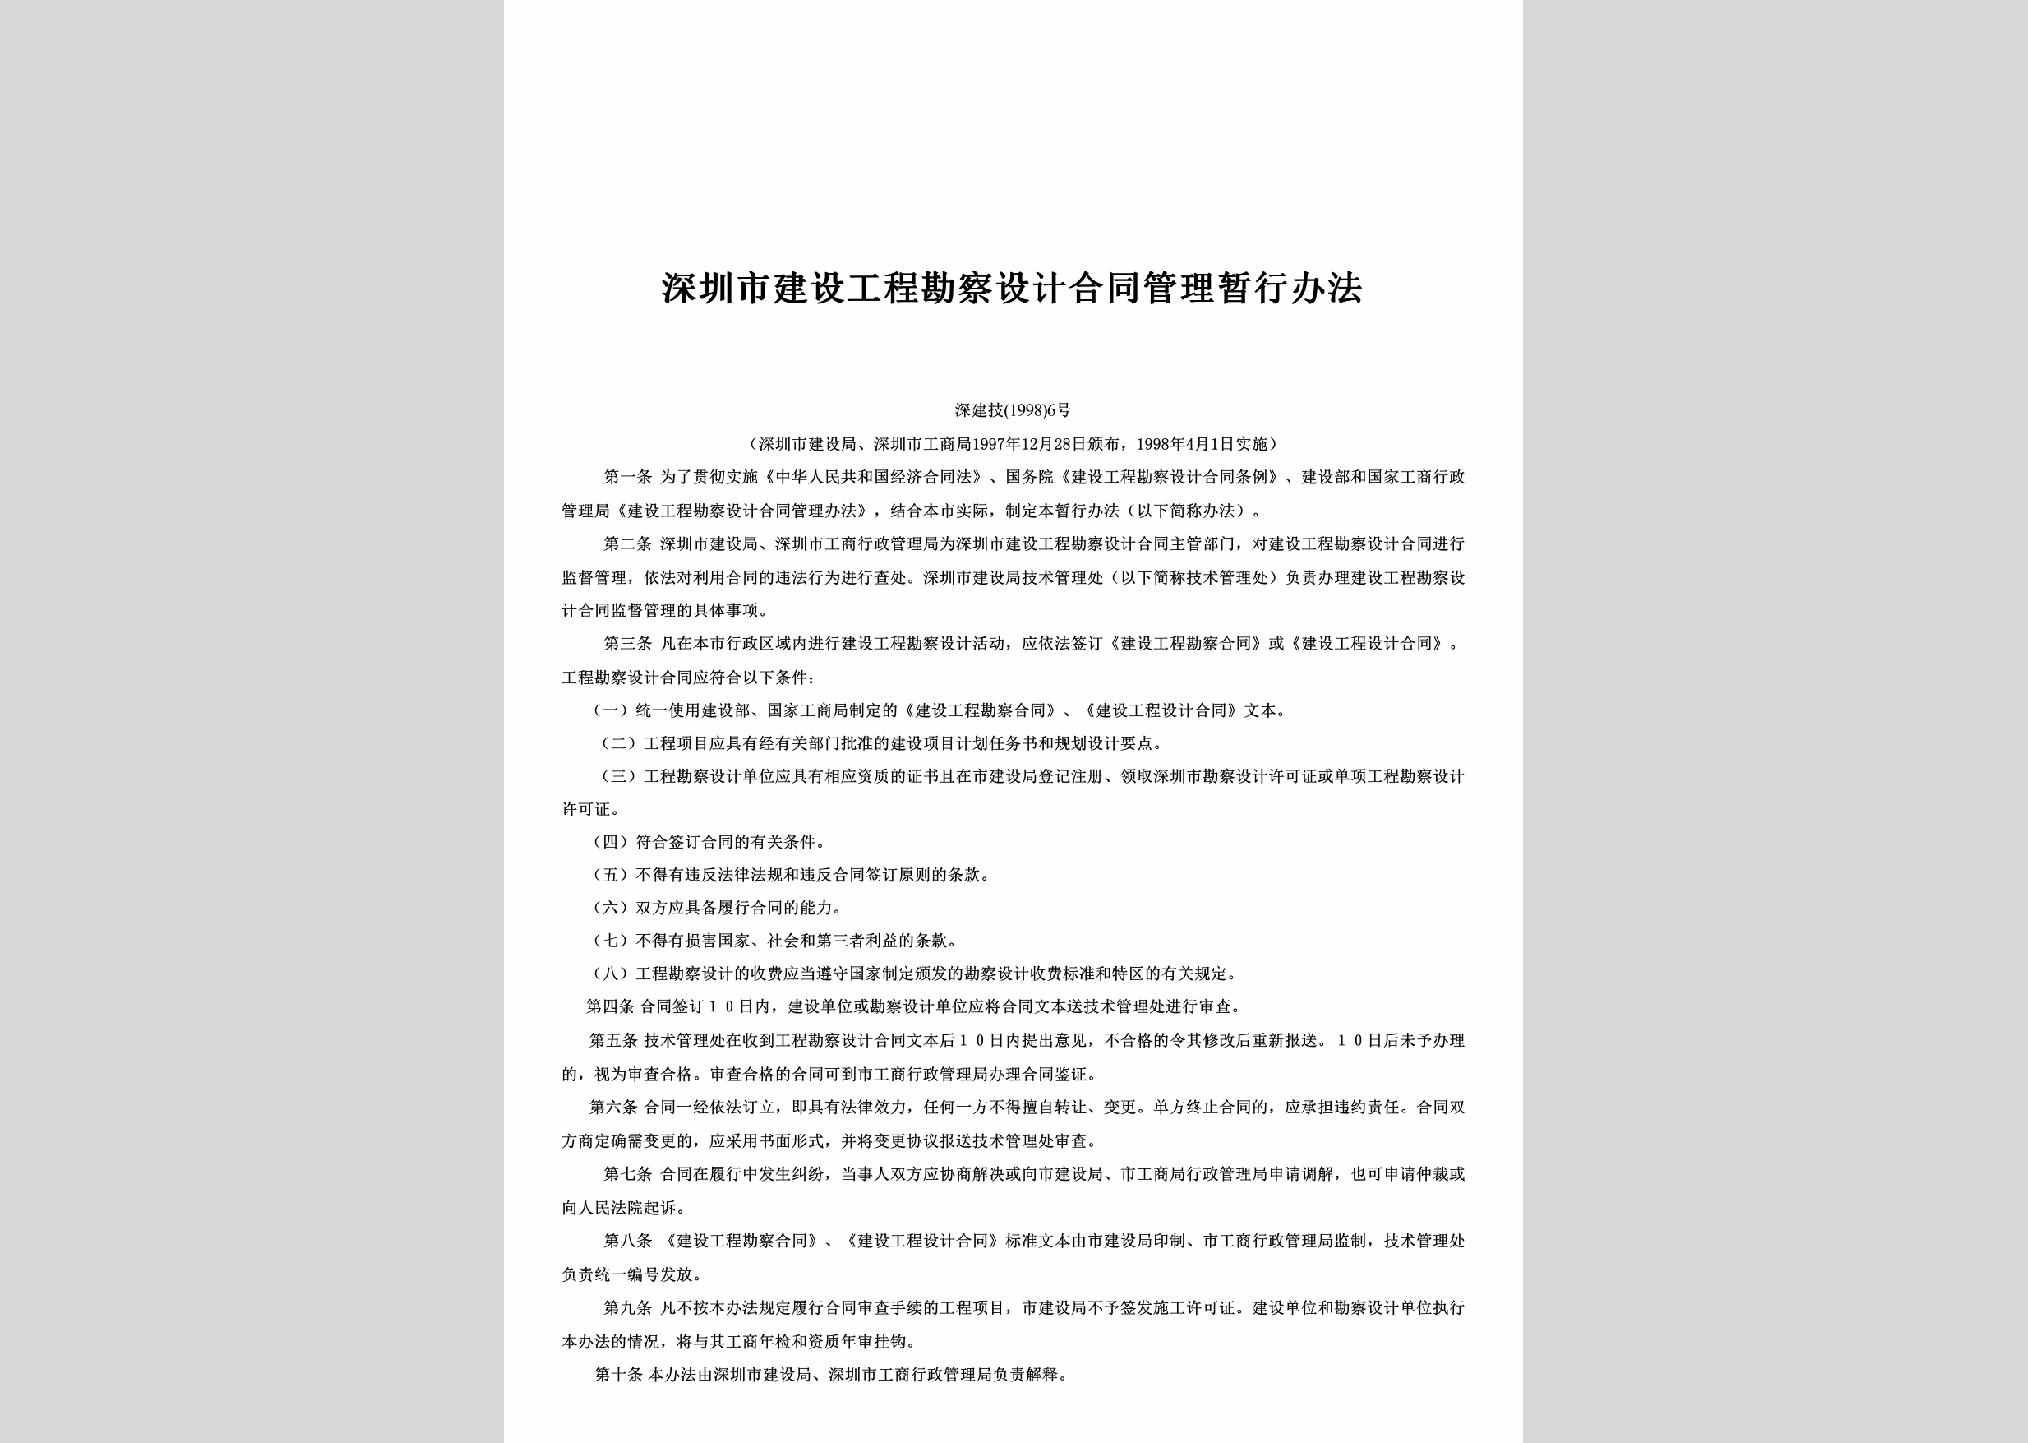 深建技[1998]6号：深圳市建设工程勘察设计合同管理暂行办法